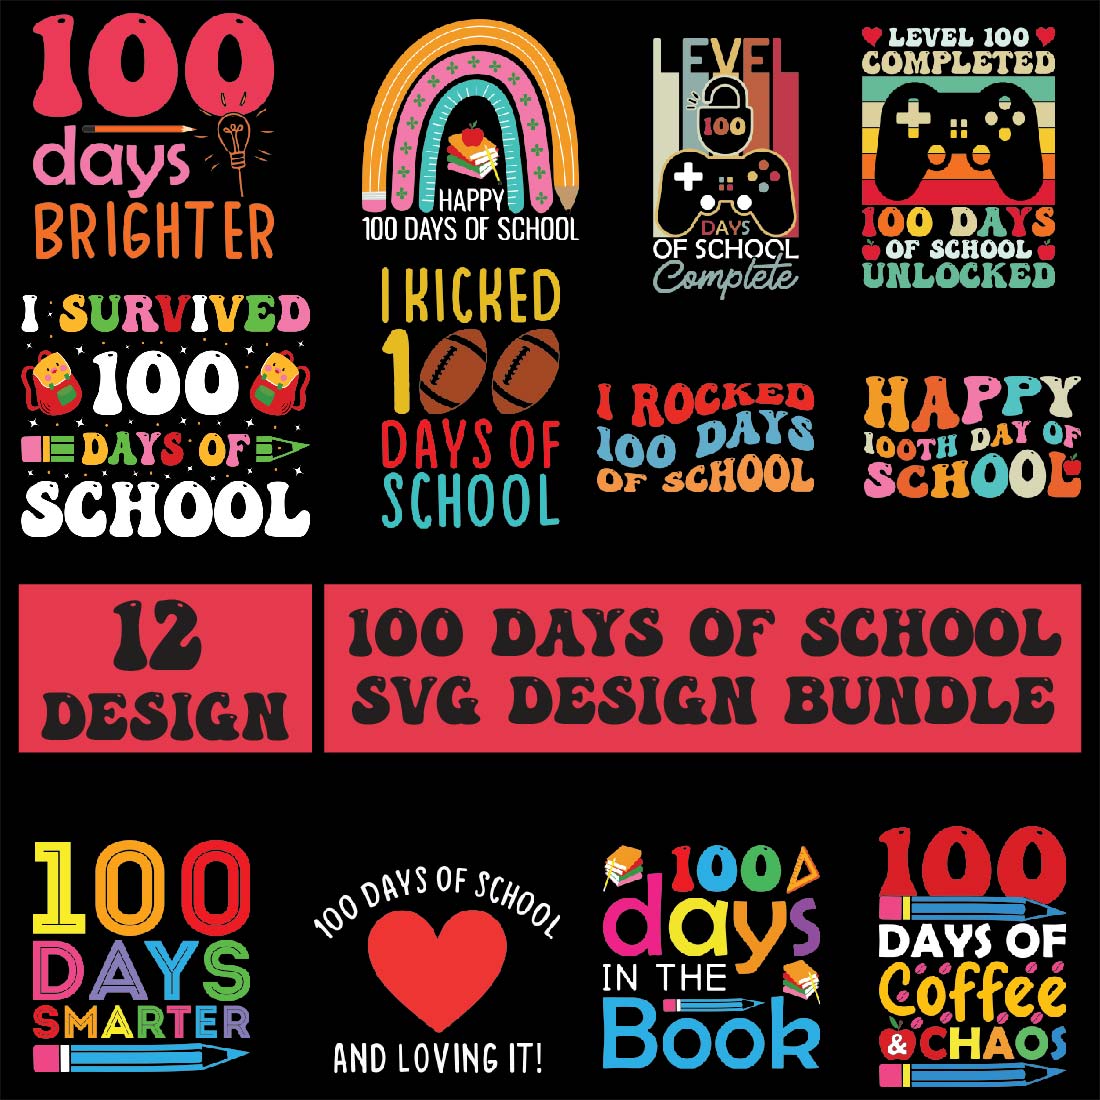 100 Days of School SVG PNG T-Shirt Design Bundle cover image.